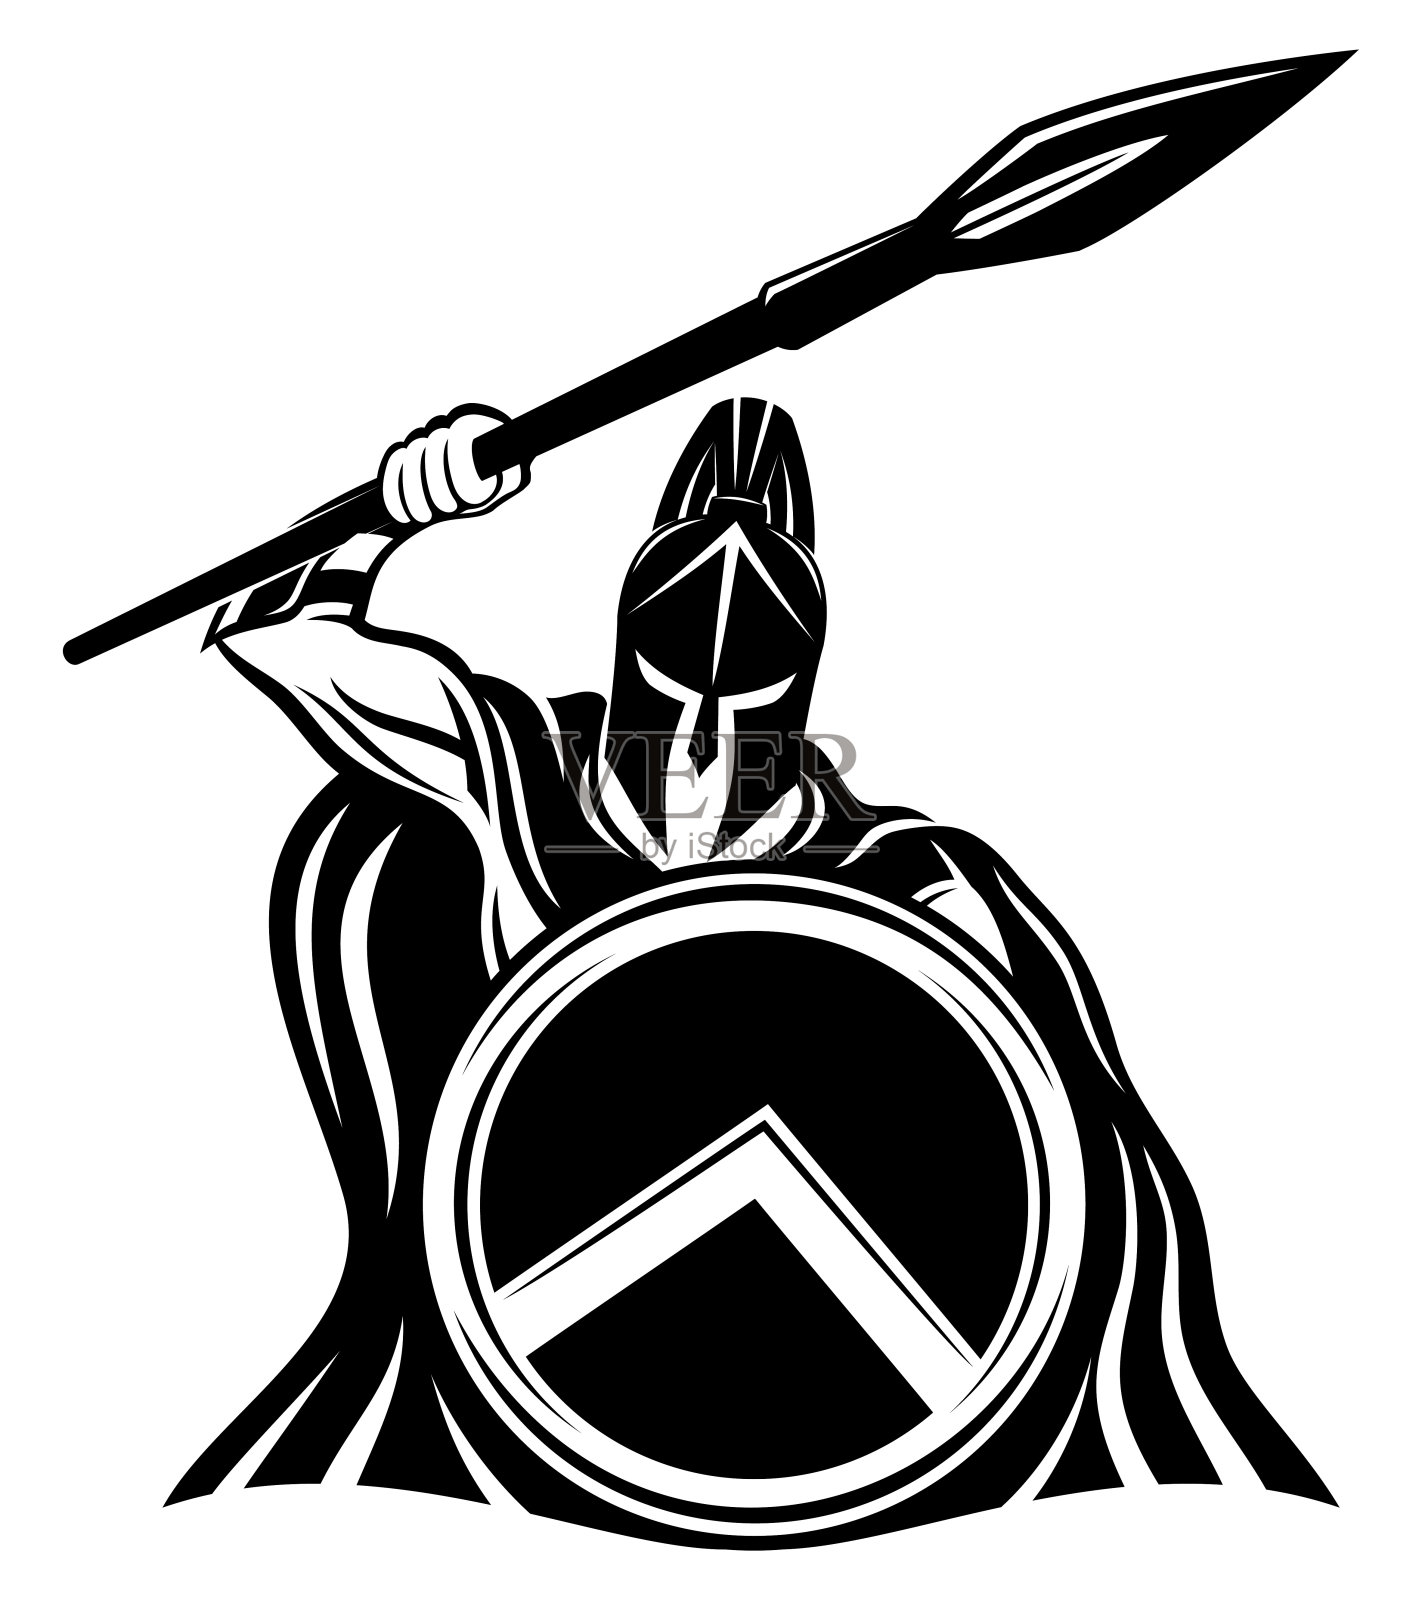 斯巴达人用矛和盾做手势。插画图片素材